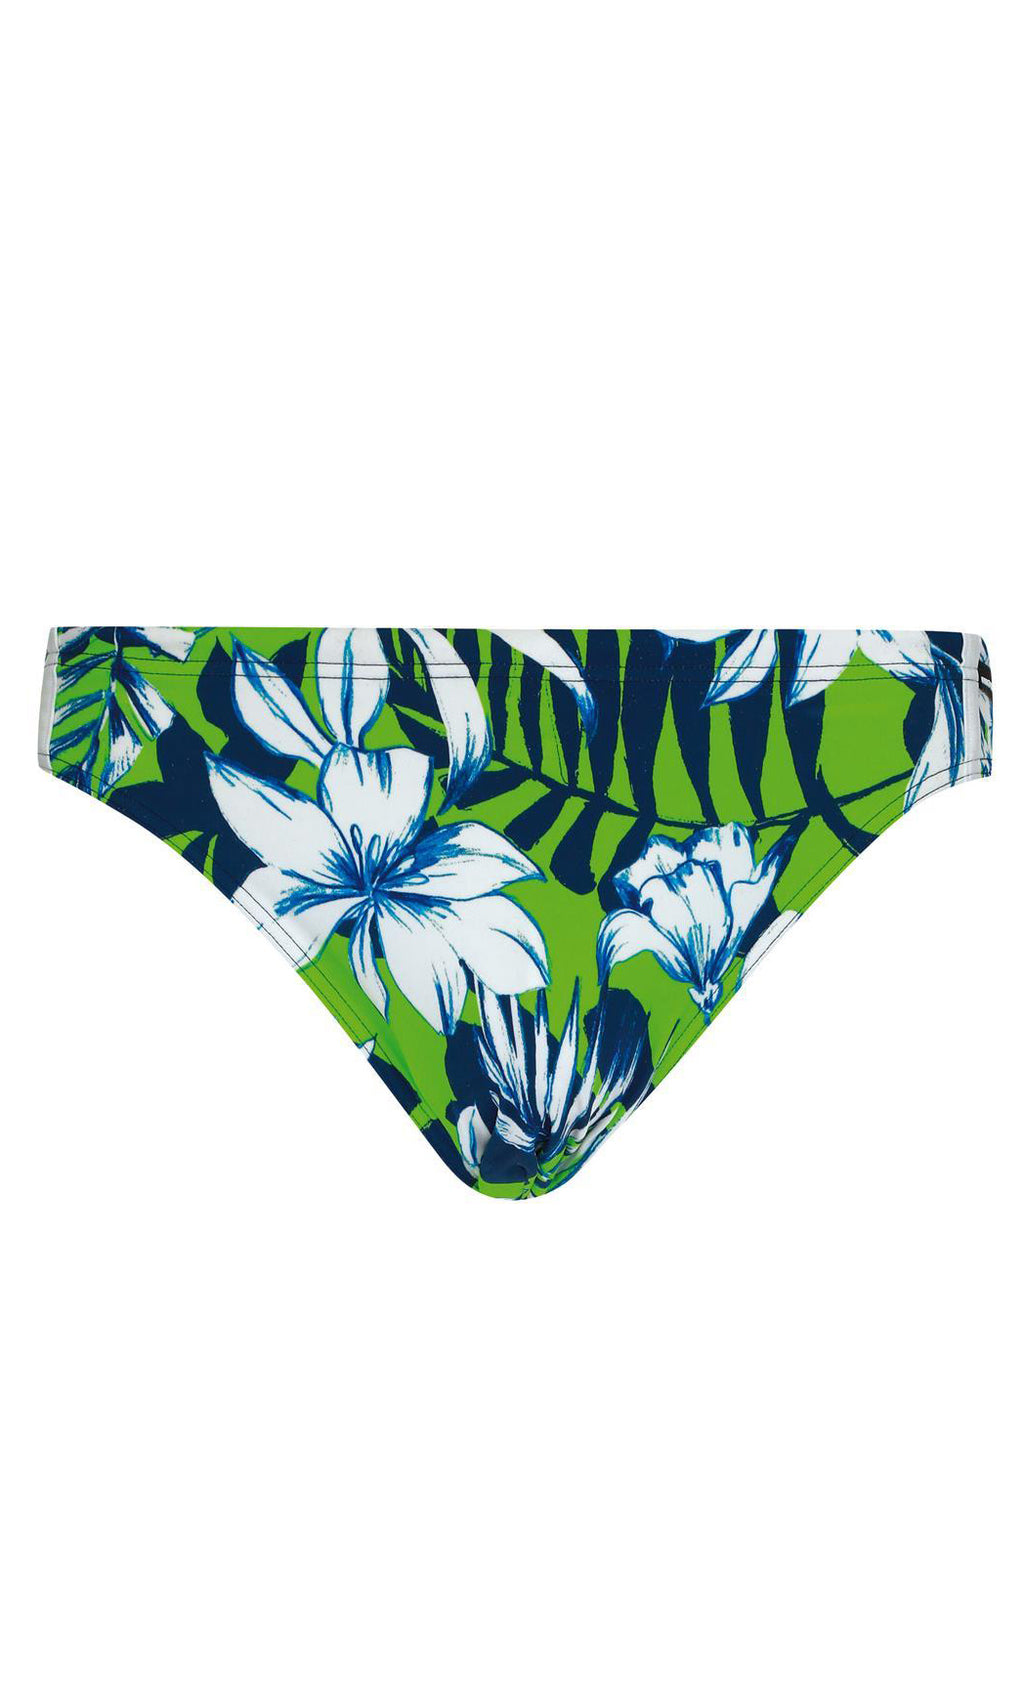 Swim Brief Sport Hibiscus, More Colours, Special Order S - L